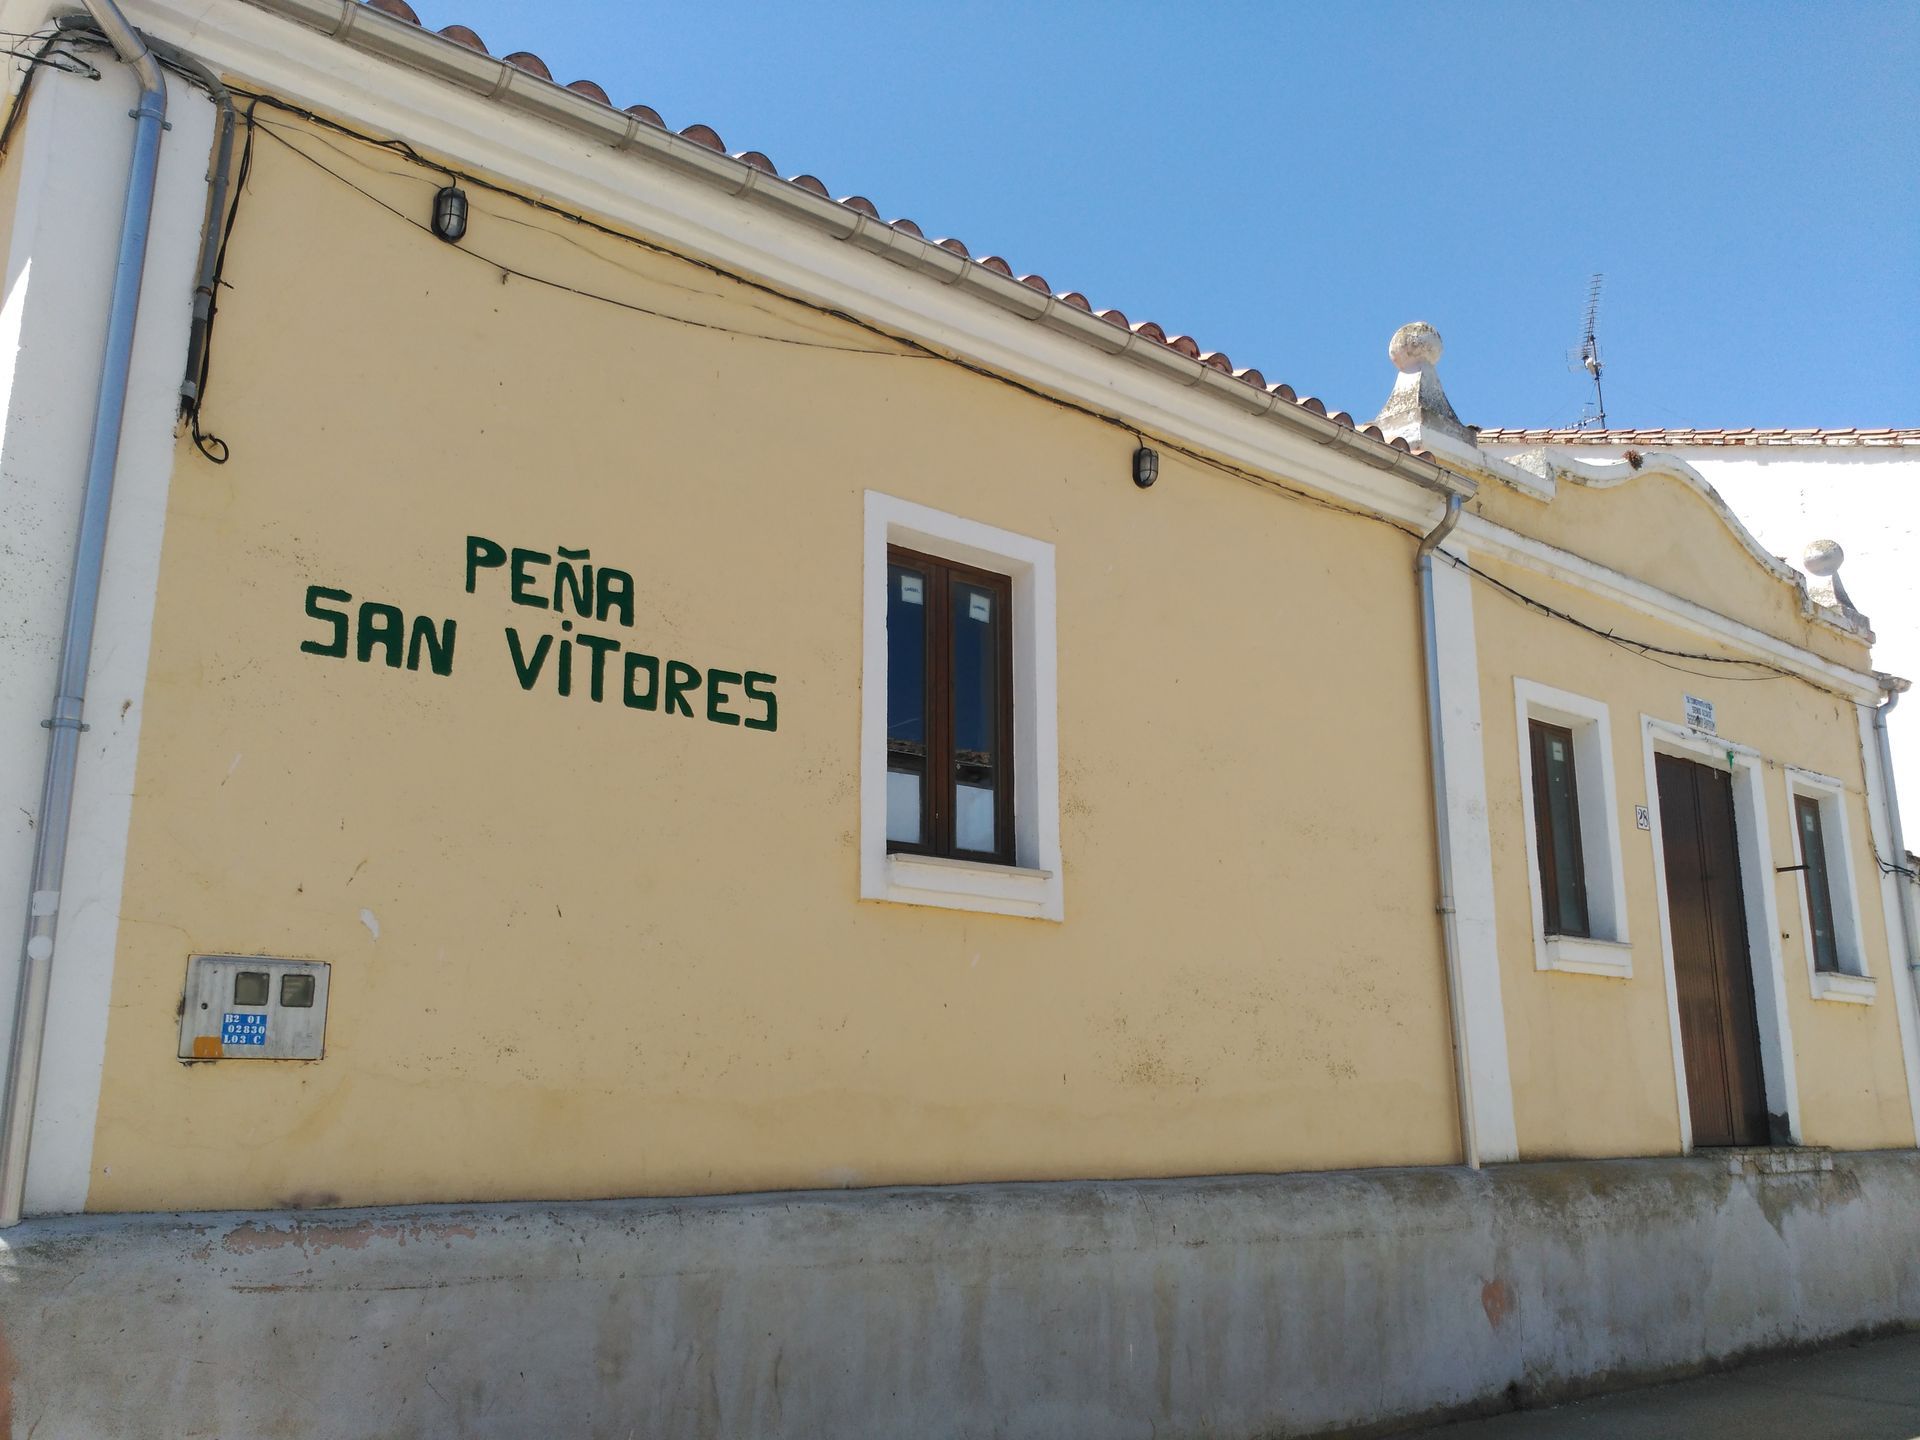 Peña San Vitores